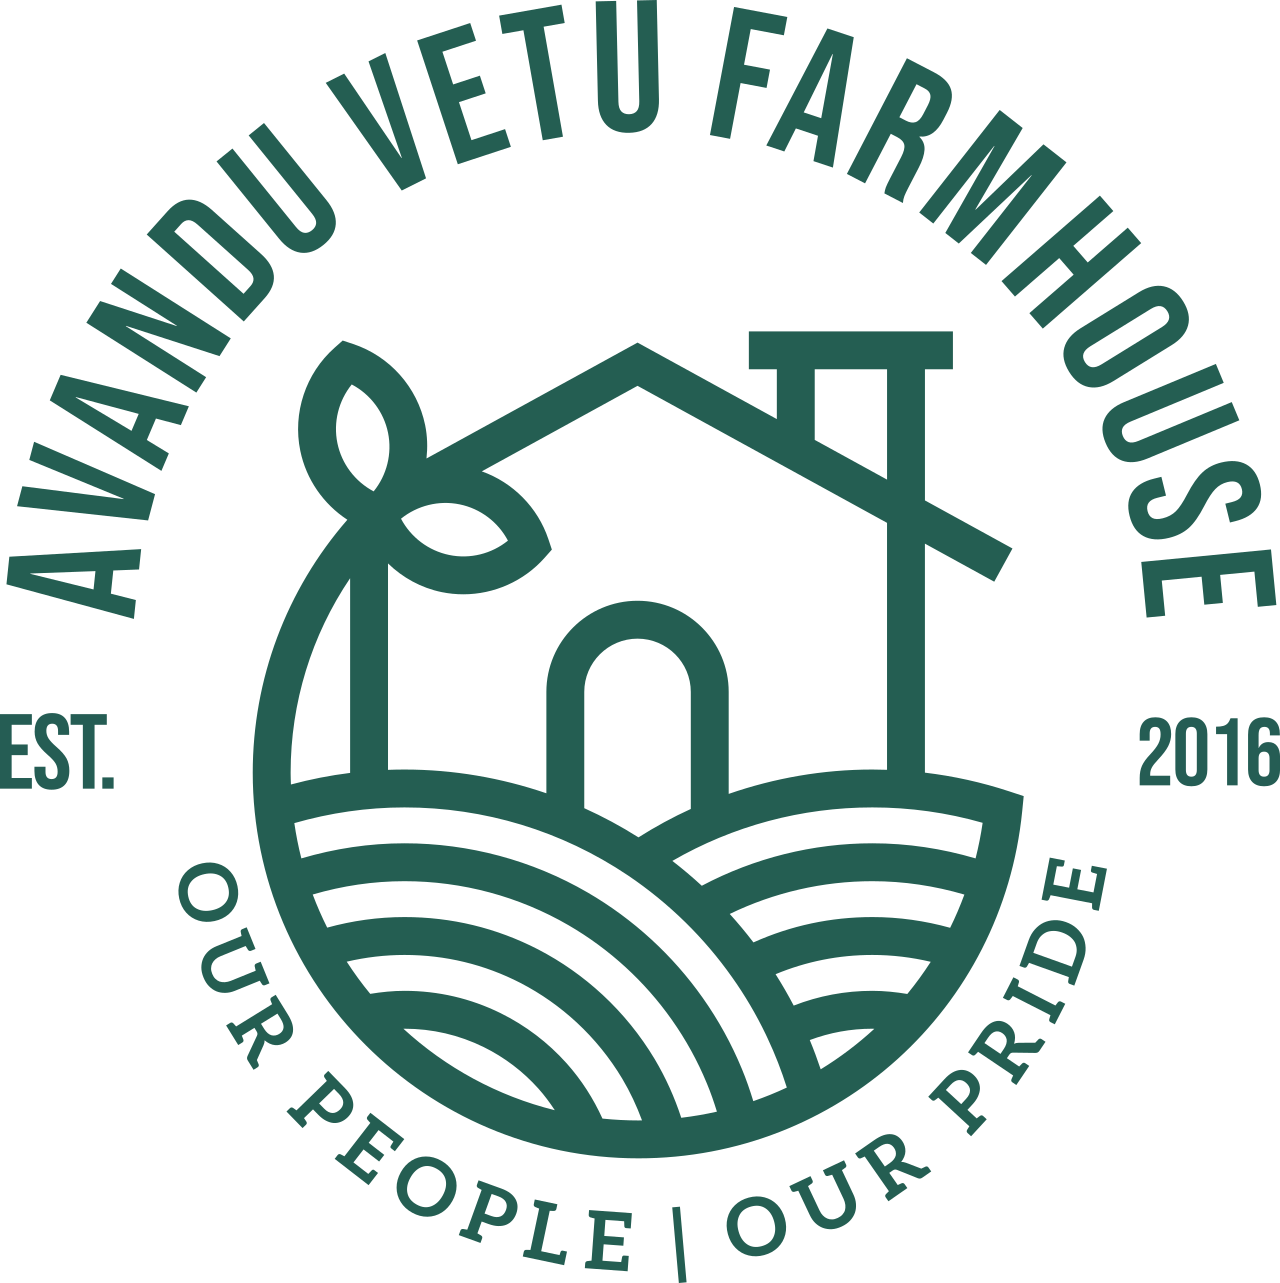 Avandu Vetu Farmhouse's logo